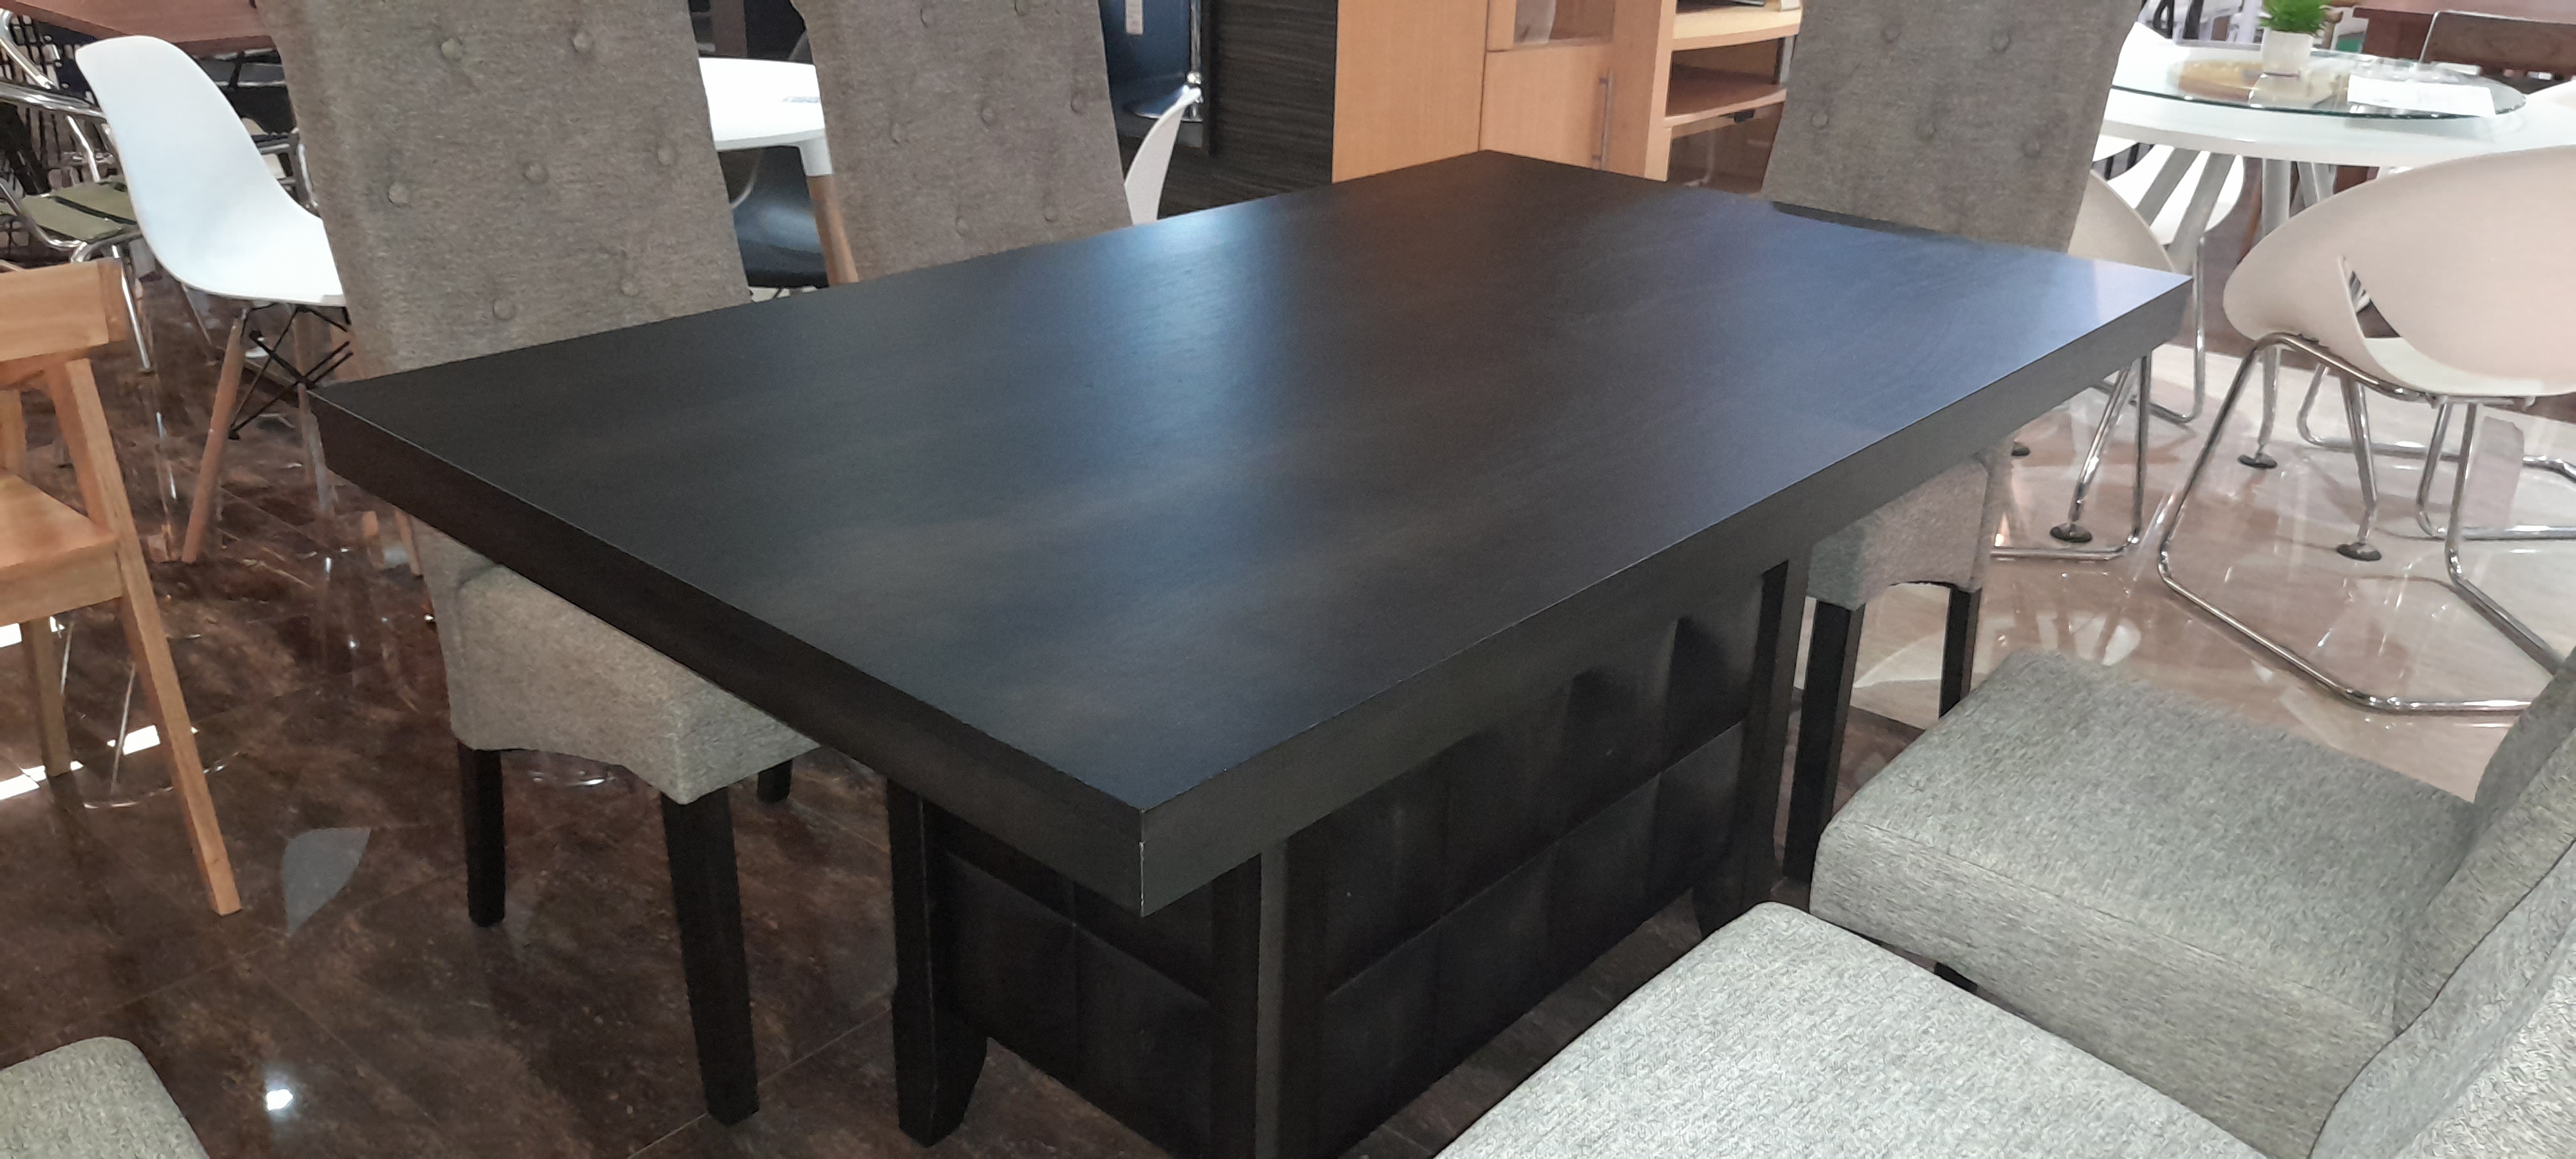 62002::EUREKA(ยูเรก้า)::ชุดโต๊ะอาหารหน้าไม้ 6 ที่นั่ง โต๊ะ ขนาด ก1500xล900xส780 มม. เก้าอี้ขนาด ก450xล660xส1040มม. หน้าโต๊ะเป็นไม้ MDF เคลือบวีเนียร์ ขาโต๊ะเป็นไม้จริง ตัวชั้นเป็นแผ่นไม้ MDF เคลือบด้วยวีเนียร์ พนักพิงและเบาะเป็นผ้า ขาเก้าอี้เป็นไม้จริง เบสช้อยส์ ชุดโต๊ะอาหาร